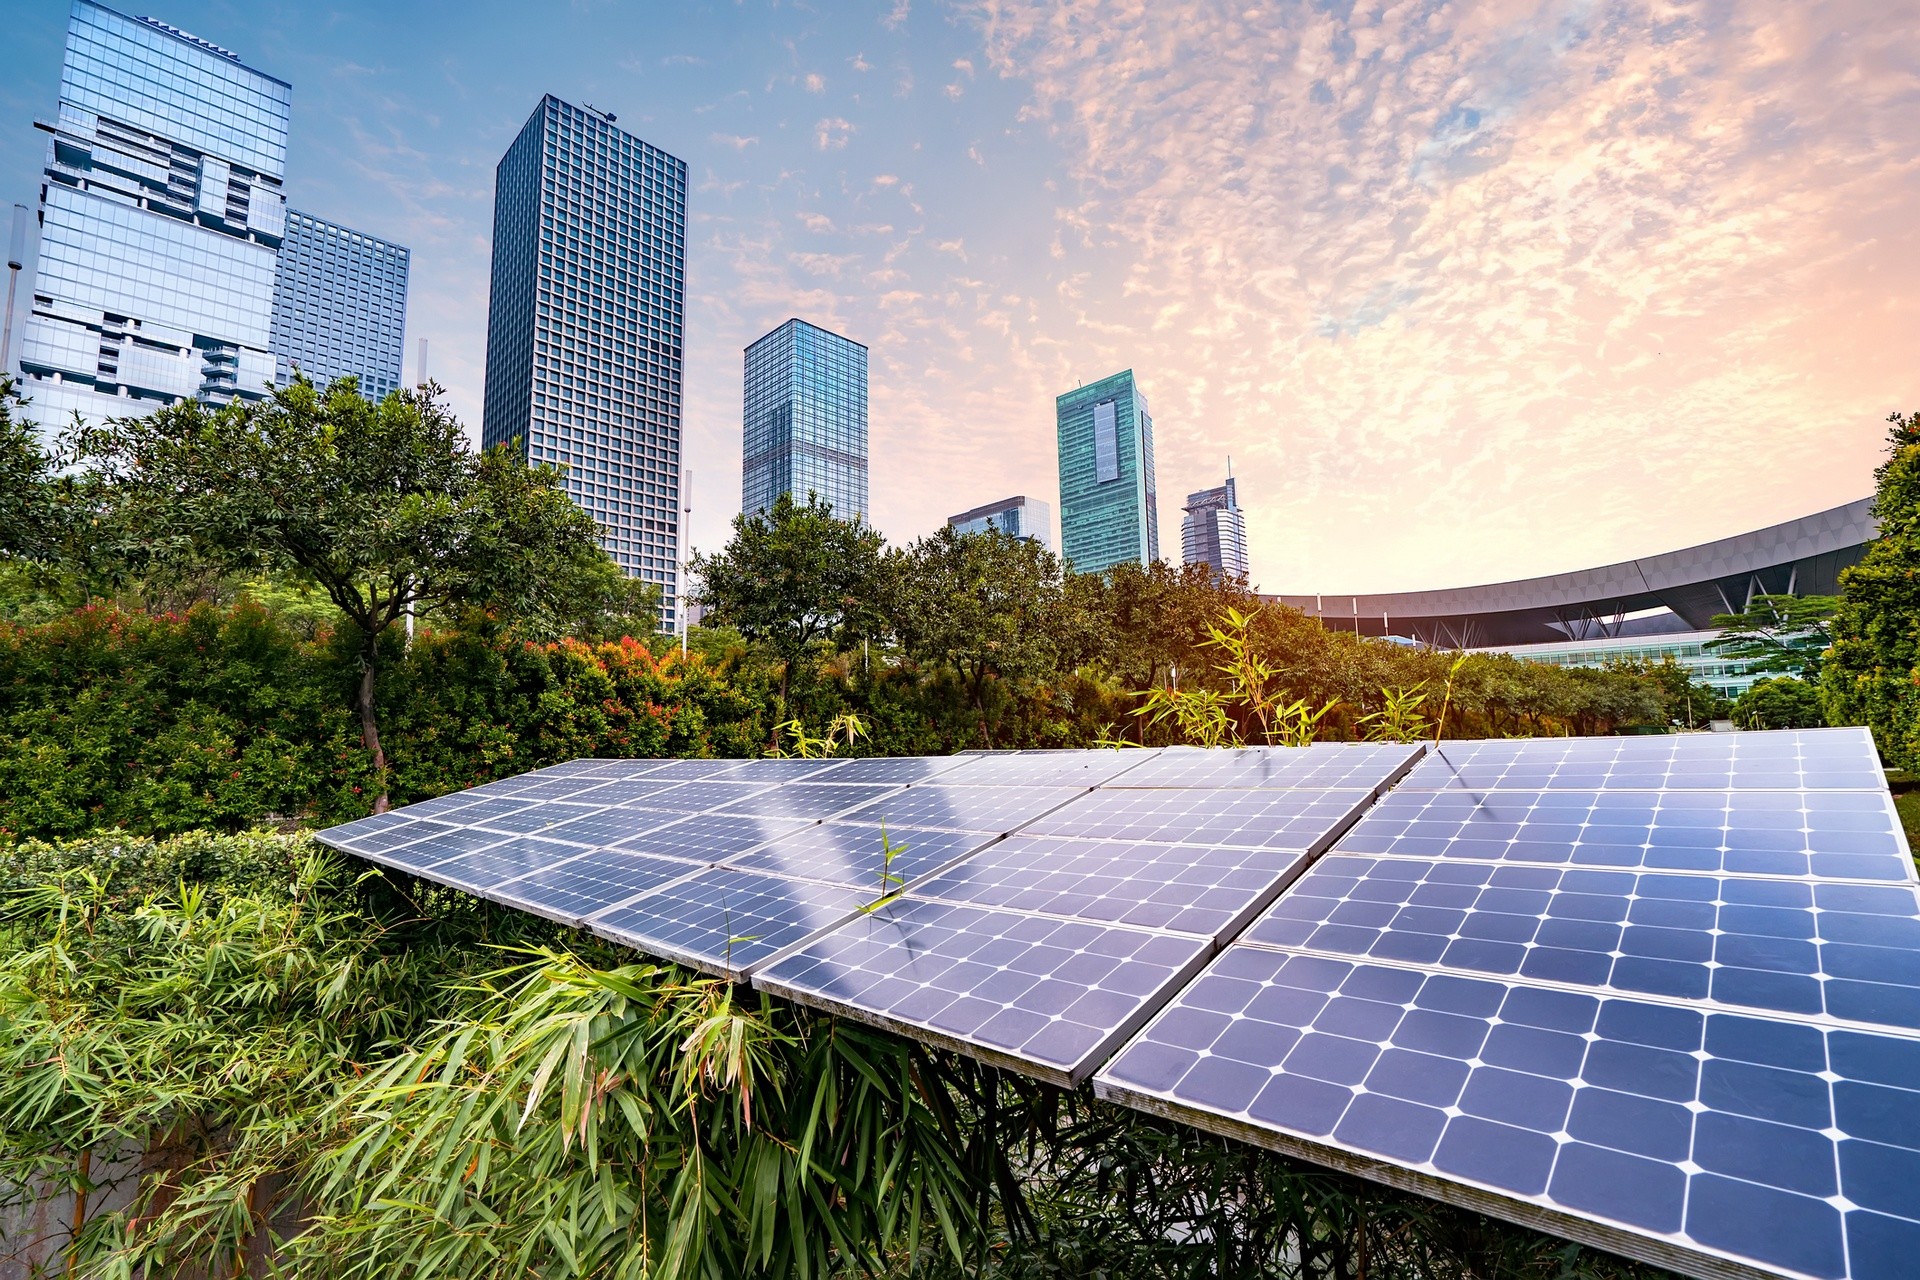 Ciudades solares: una oportunidad que no deberíamos desaprovechar